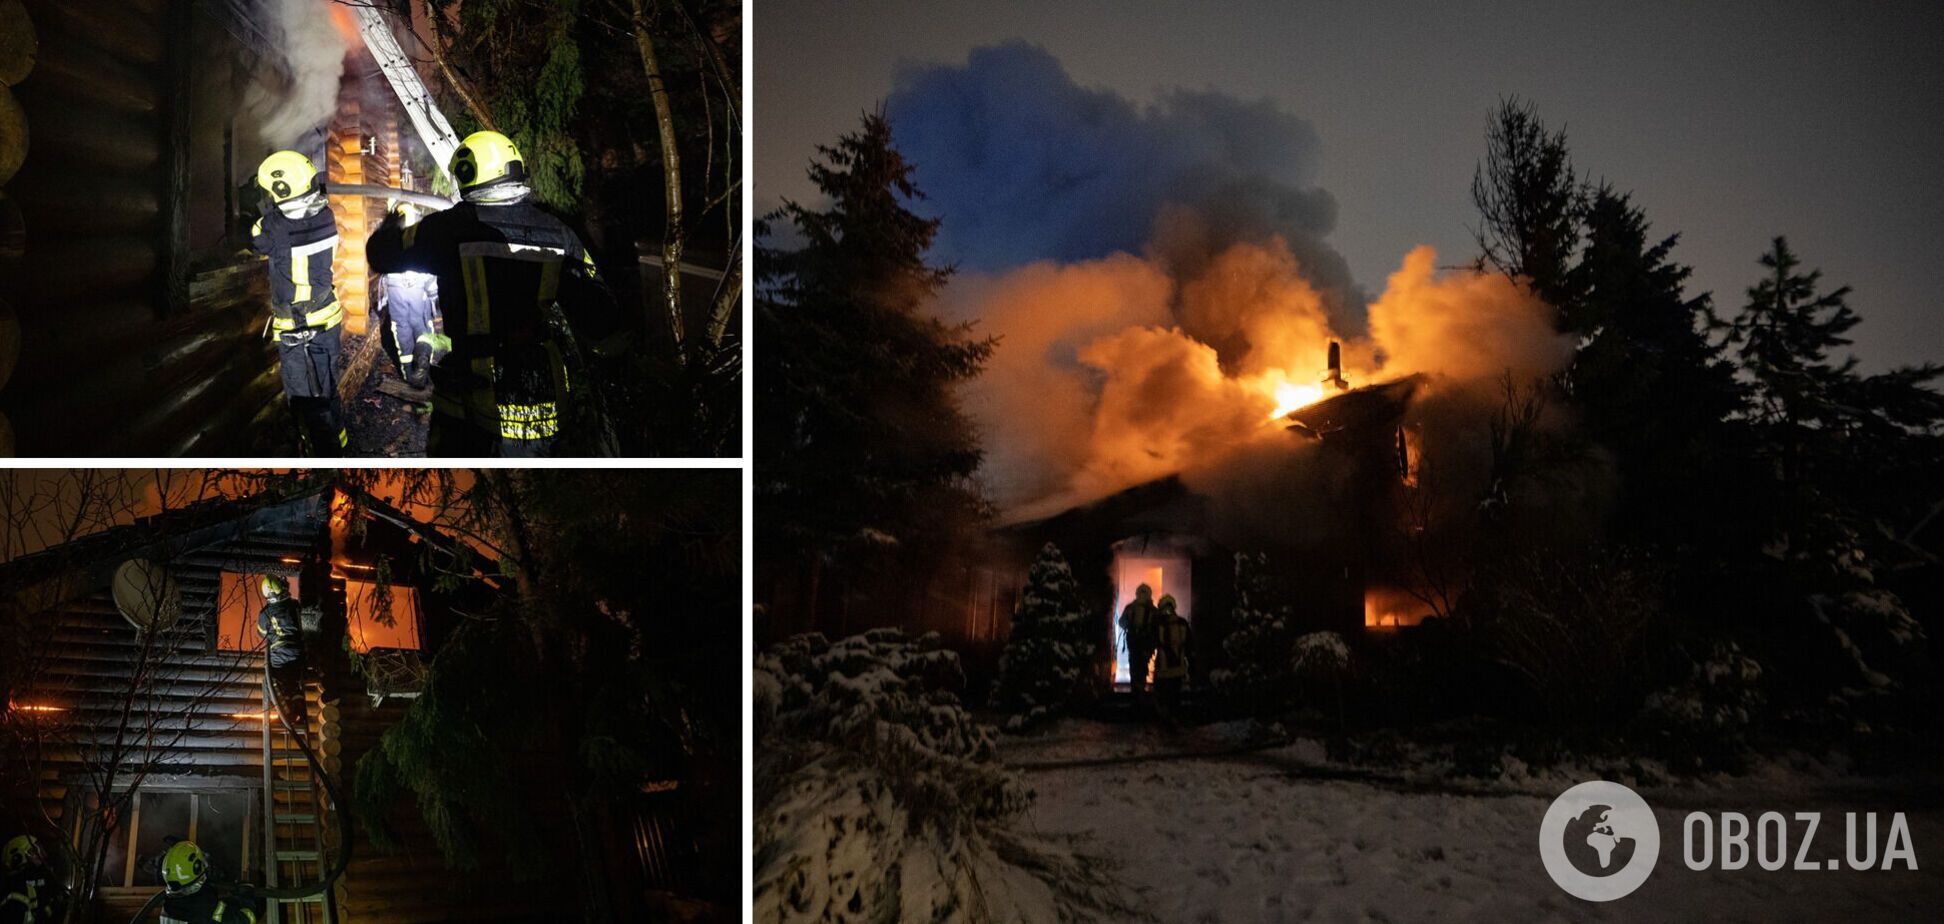 Пожар произошел в Подольском районе столицы